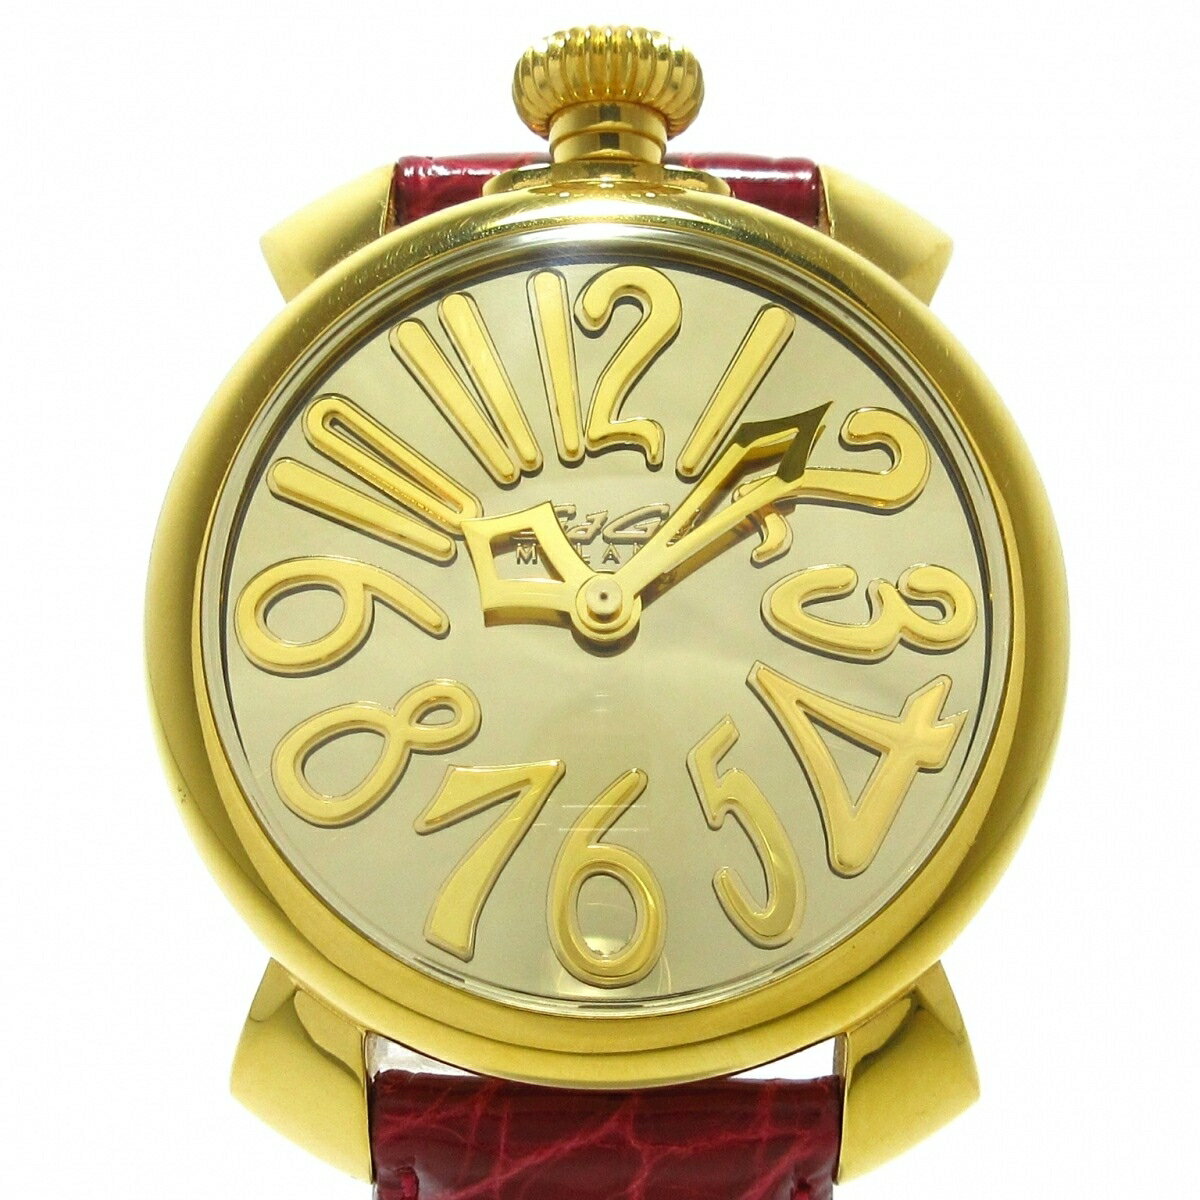 【中古】GAGA MILANO(ガガミラノ) マヌアーレ40 腕時計 SS/革ベルト/世界500本限定 ゴールド